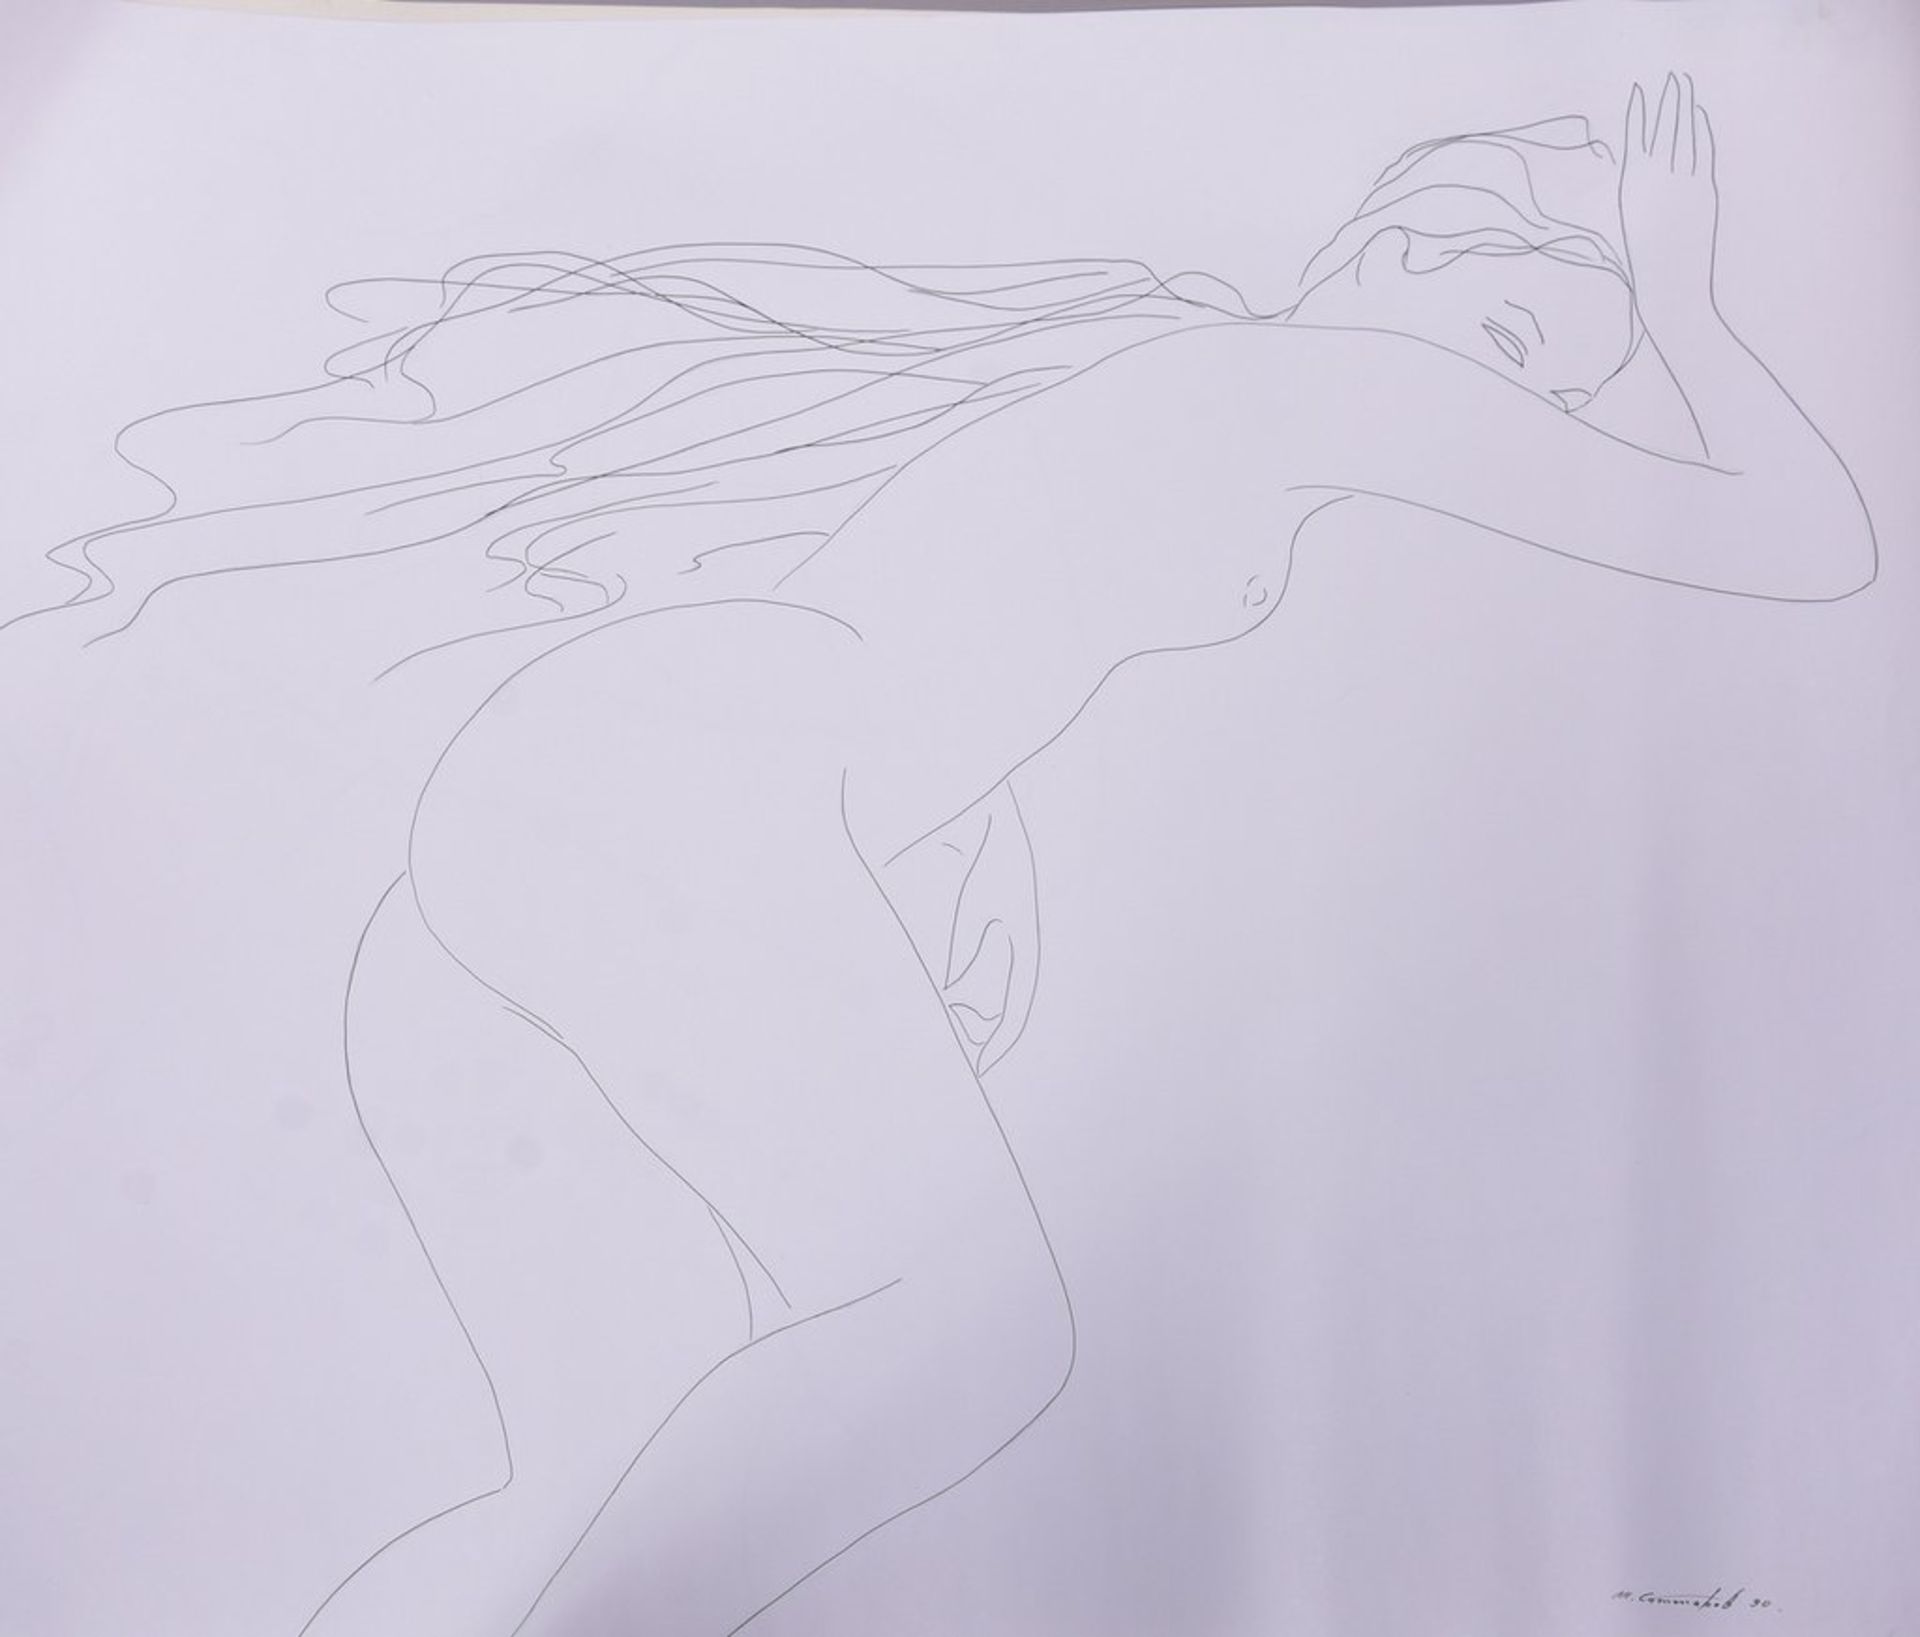 Sattarov, Mansur, dito, Zeichnung "Liegender weiblicher Akt", sign.u.dat.1990, BM 84x63cm